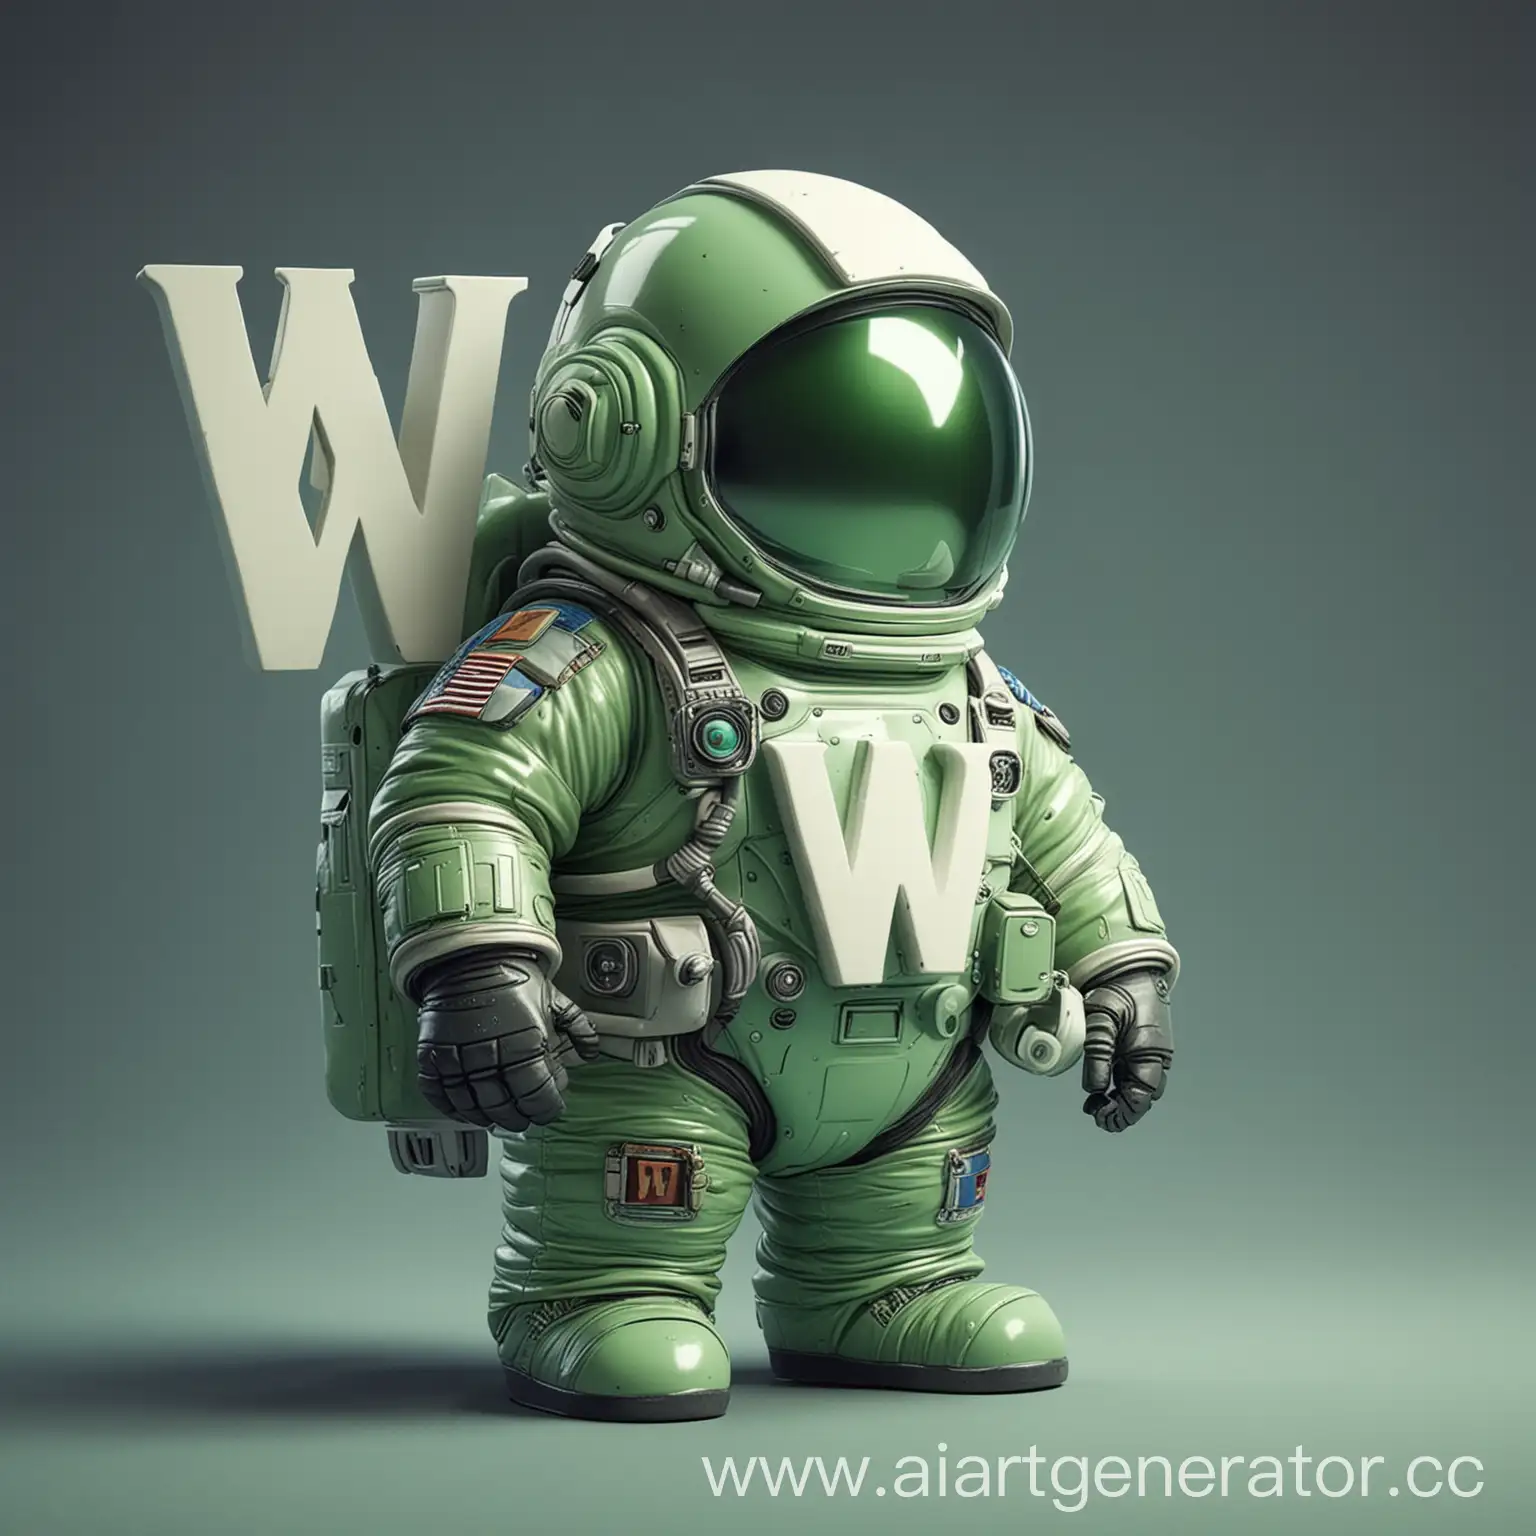 зеленый пухлый космонавт с буквой W на шлеме